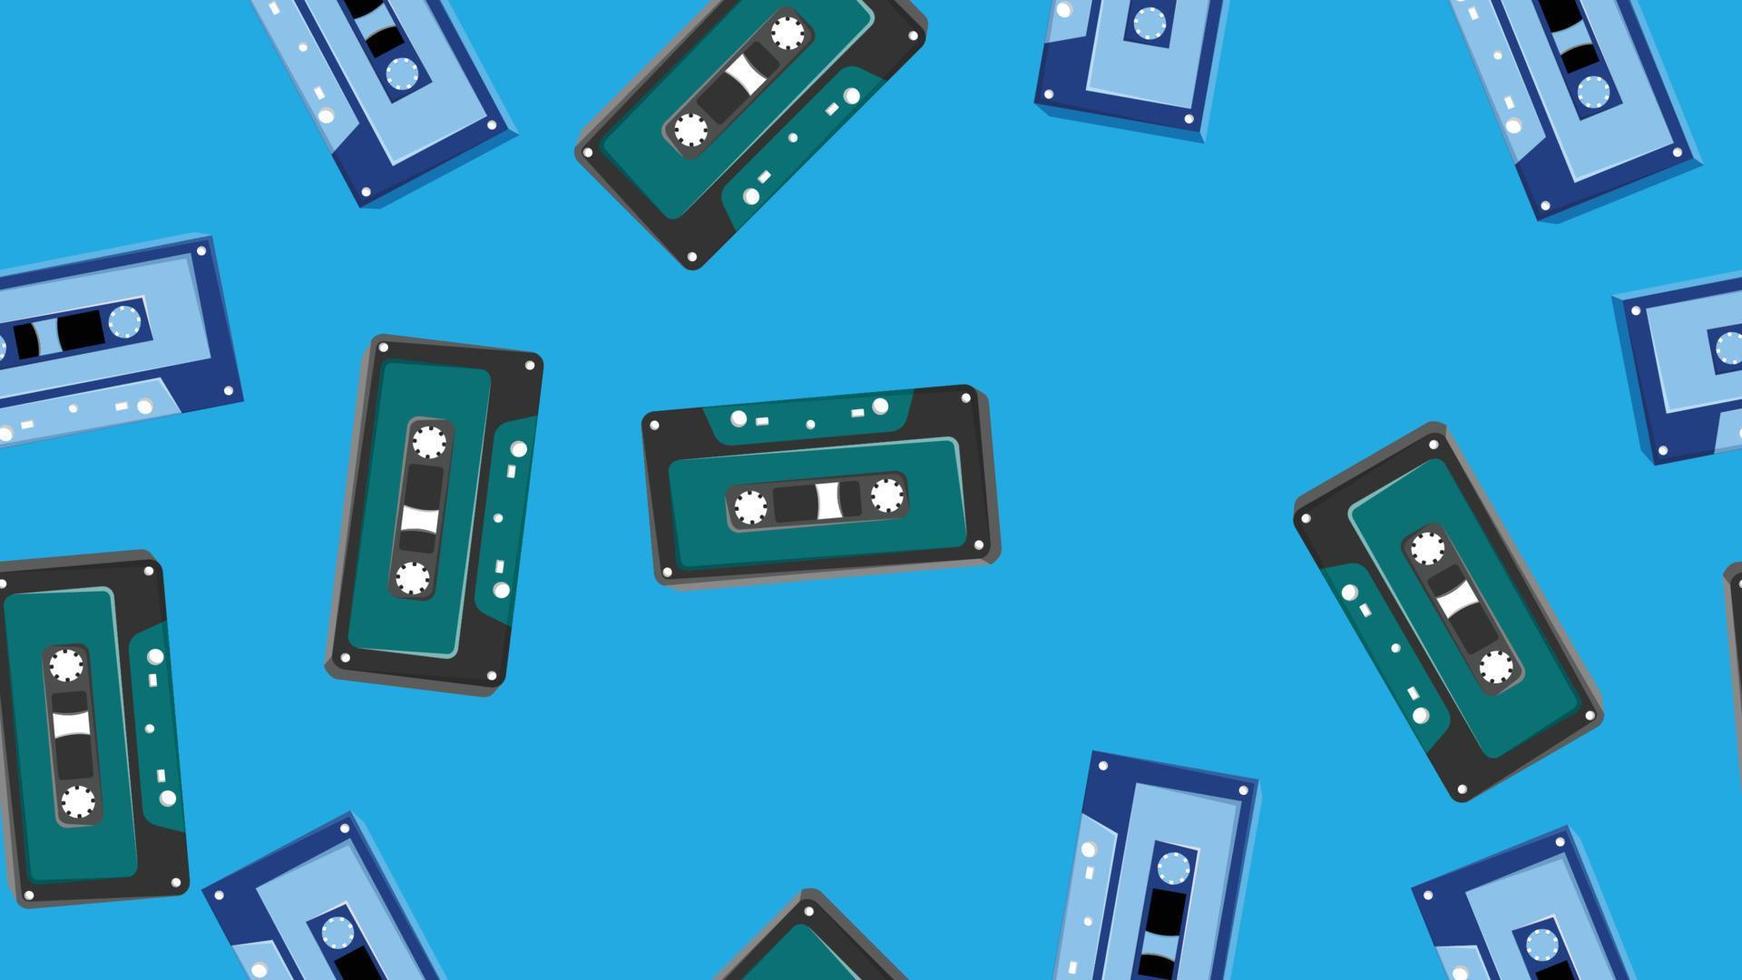 padrão perfeito sem fim com cassetes de áudio de música velho hipster vintage retrô dos anos 70, 80, 90 isolados em fundo azul. ilustração vetorial vetor